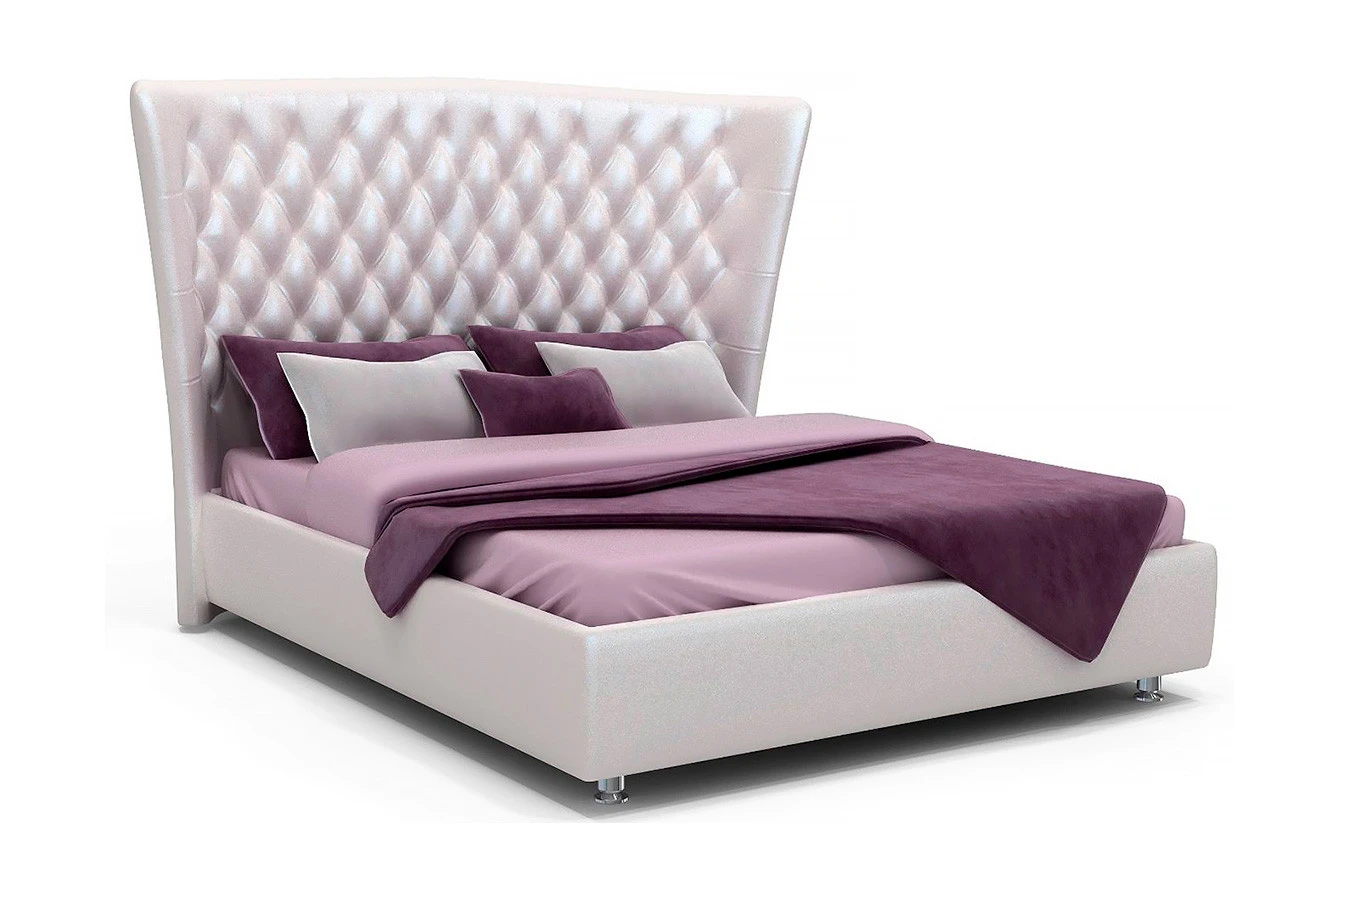 Мягкая кровать Sofia с высоким изголовьем Askona фото - 8 - большое изображение